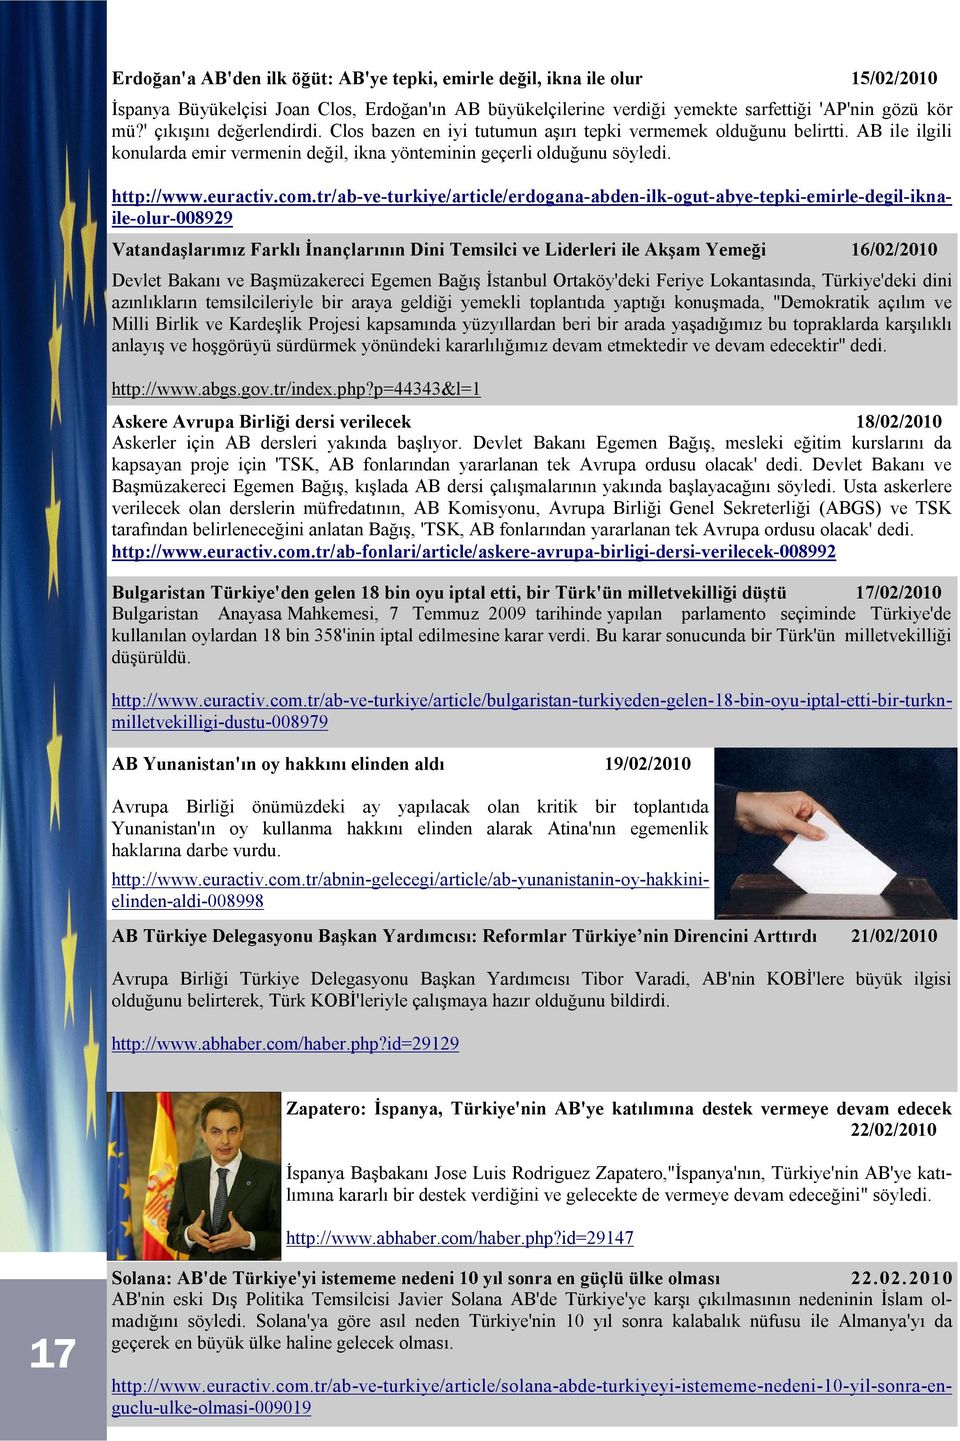 Vatandaşlarımız Farklı İnançlarının Dini Temsilci ve Liderleri ile Akşam Yemeği 16/02/2010 Devlet Bakanı ve Başmüzakereci Egemen Bağış İstanbul Ortaköy'deki Feriye Lokantasında, Türkiye'deki dini